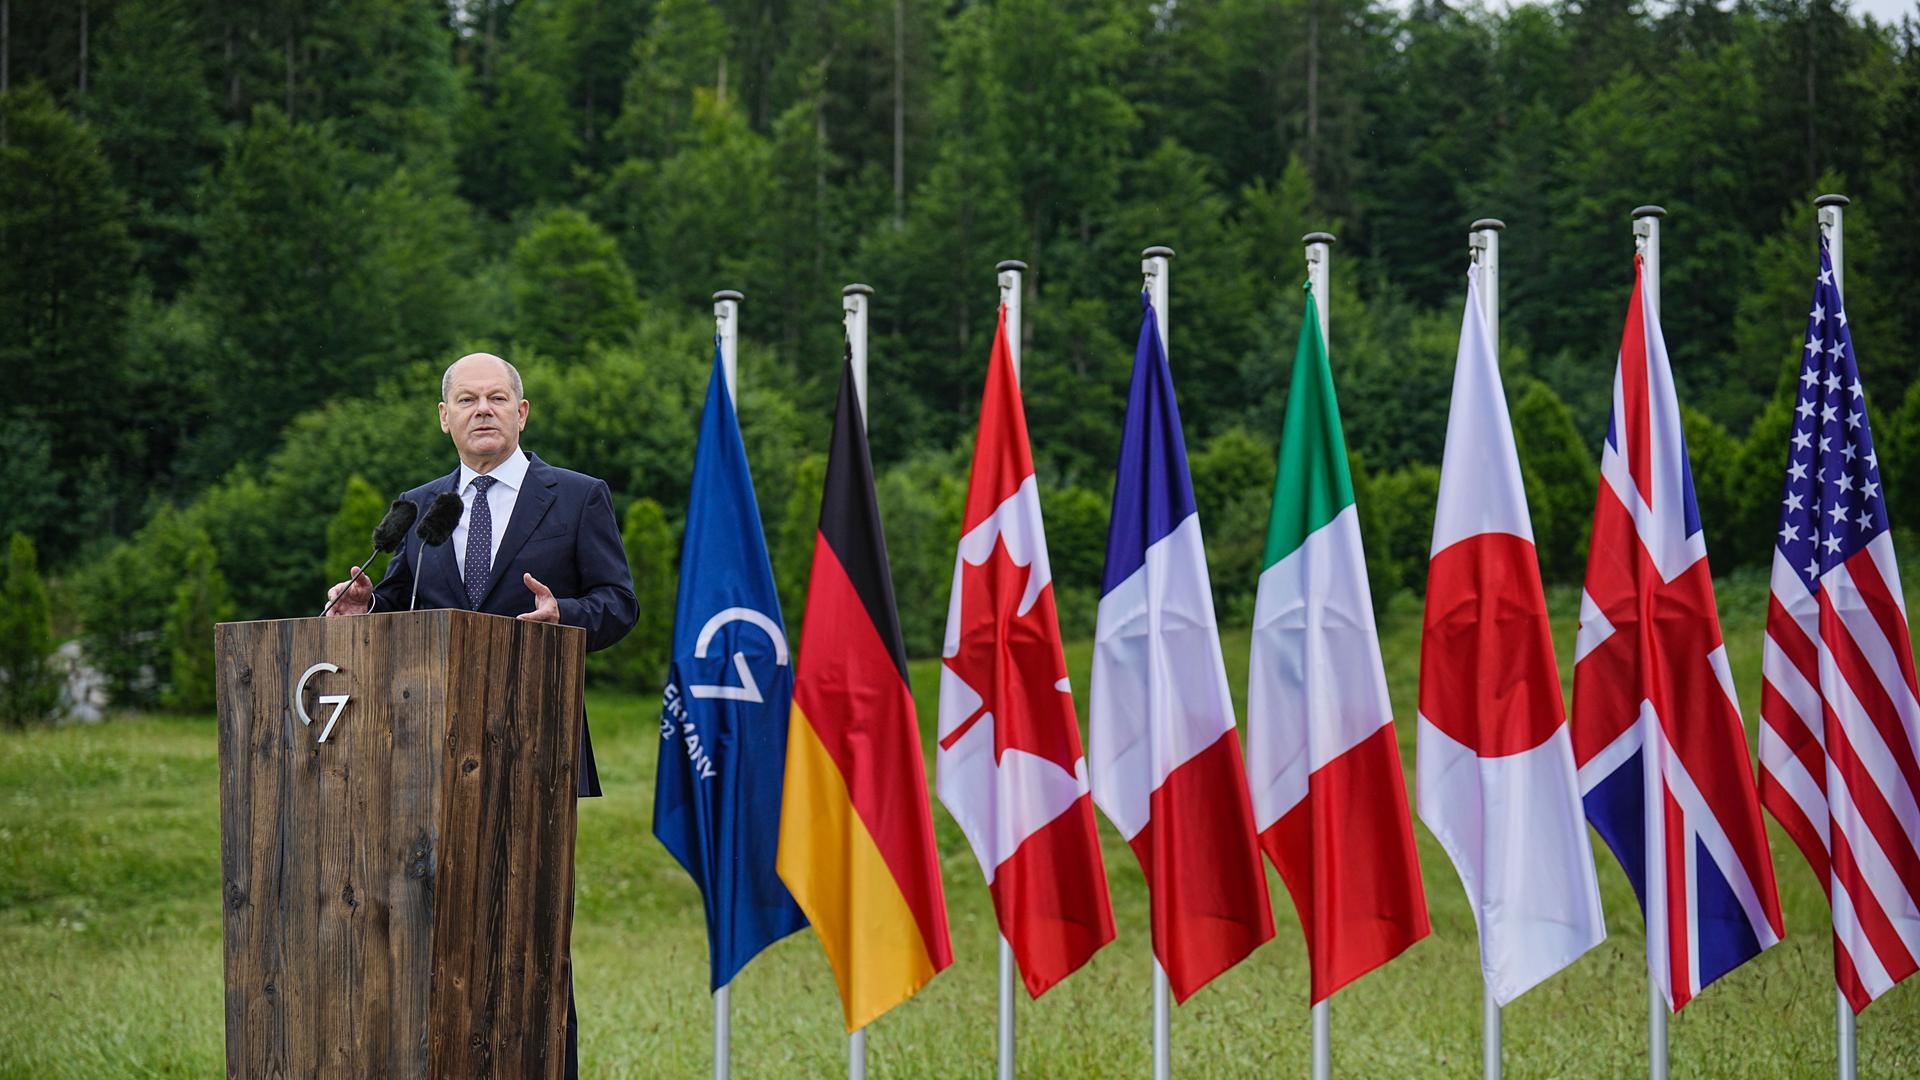 Bundeskanzler Olaf Scholz (SPD) spricht während einer Pressekonferenz zum Abschluss des G-7-Gipfels auf Schloss Elmau.